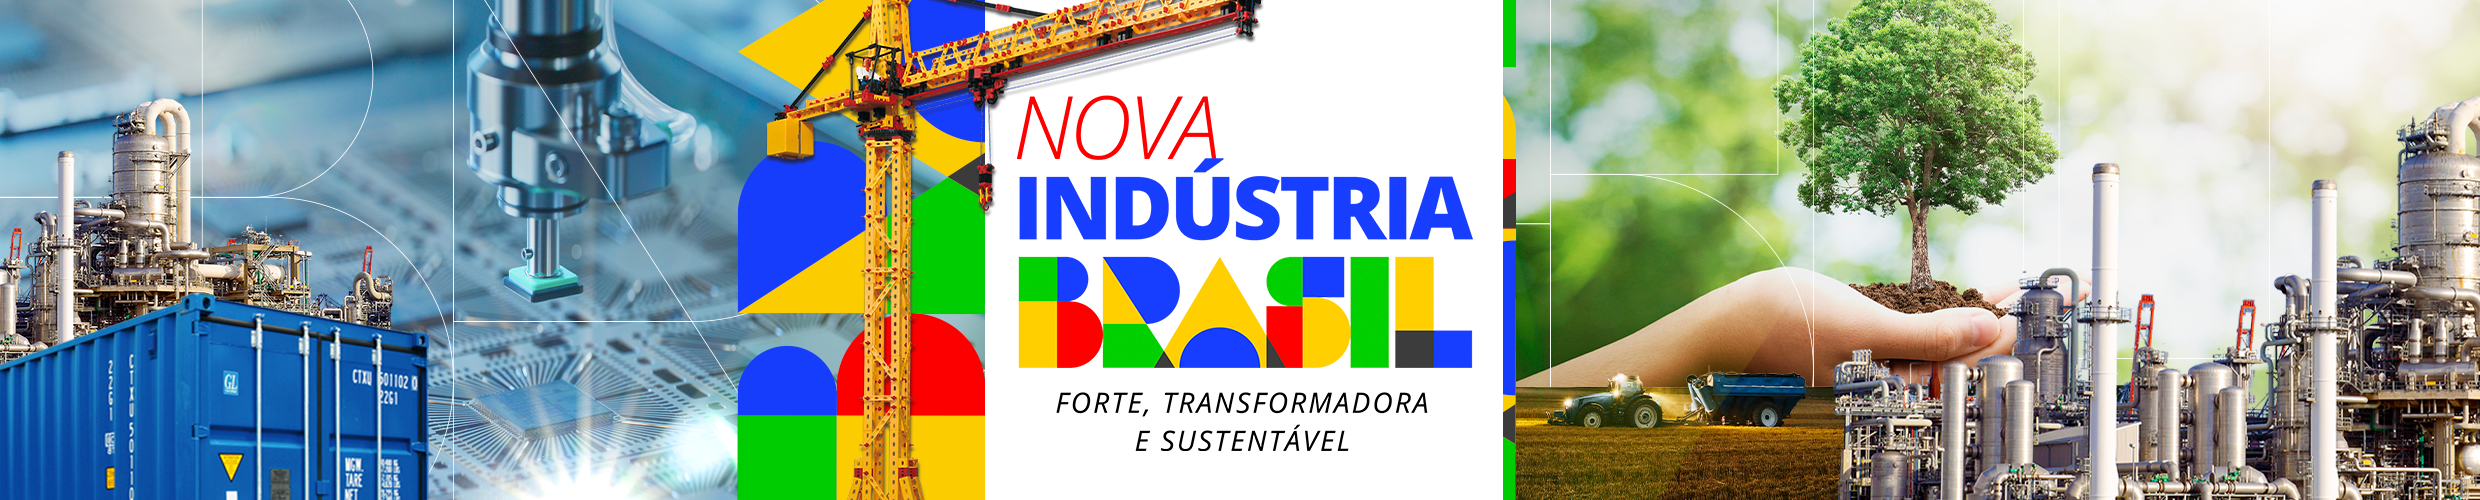 Conselho Nacional de Desenvolvimento Industrial (CNDI) - Nova Política Industrial